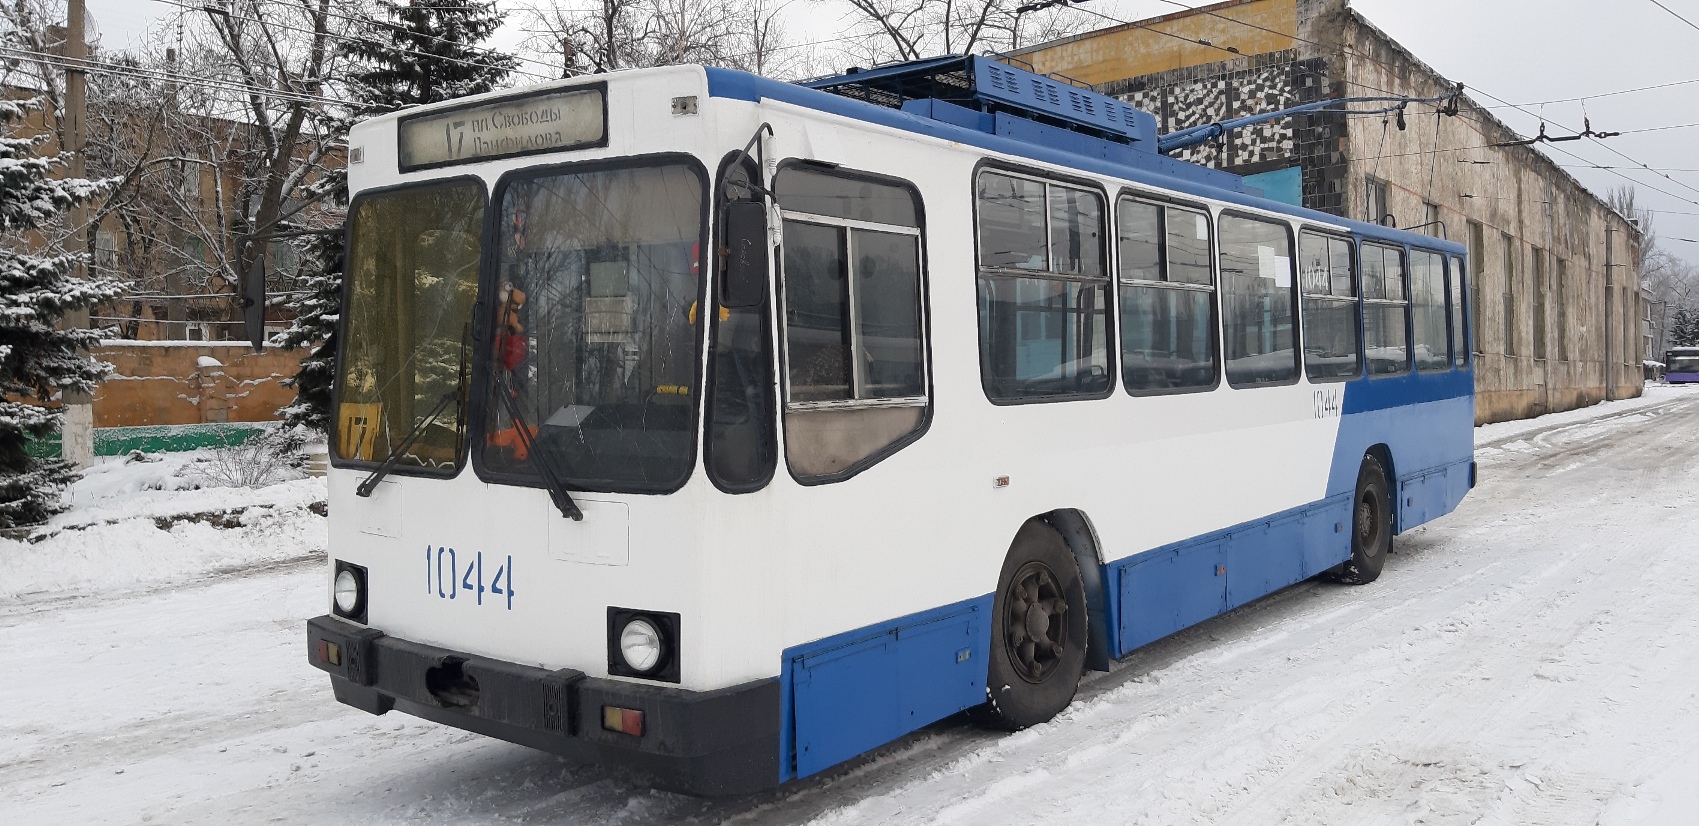 ЛАЗ е183а1. Ремонт троллейбуса. Славянск -- - твой транспорт ЛАЗ е183. Донэлектроавтотранс.